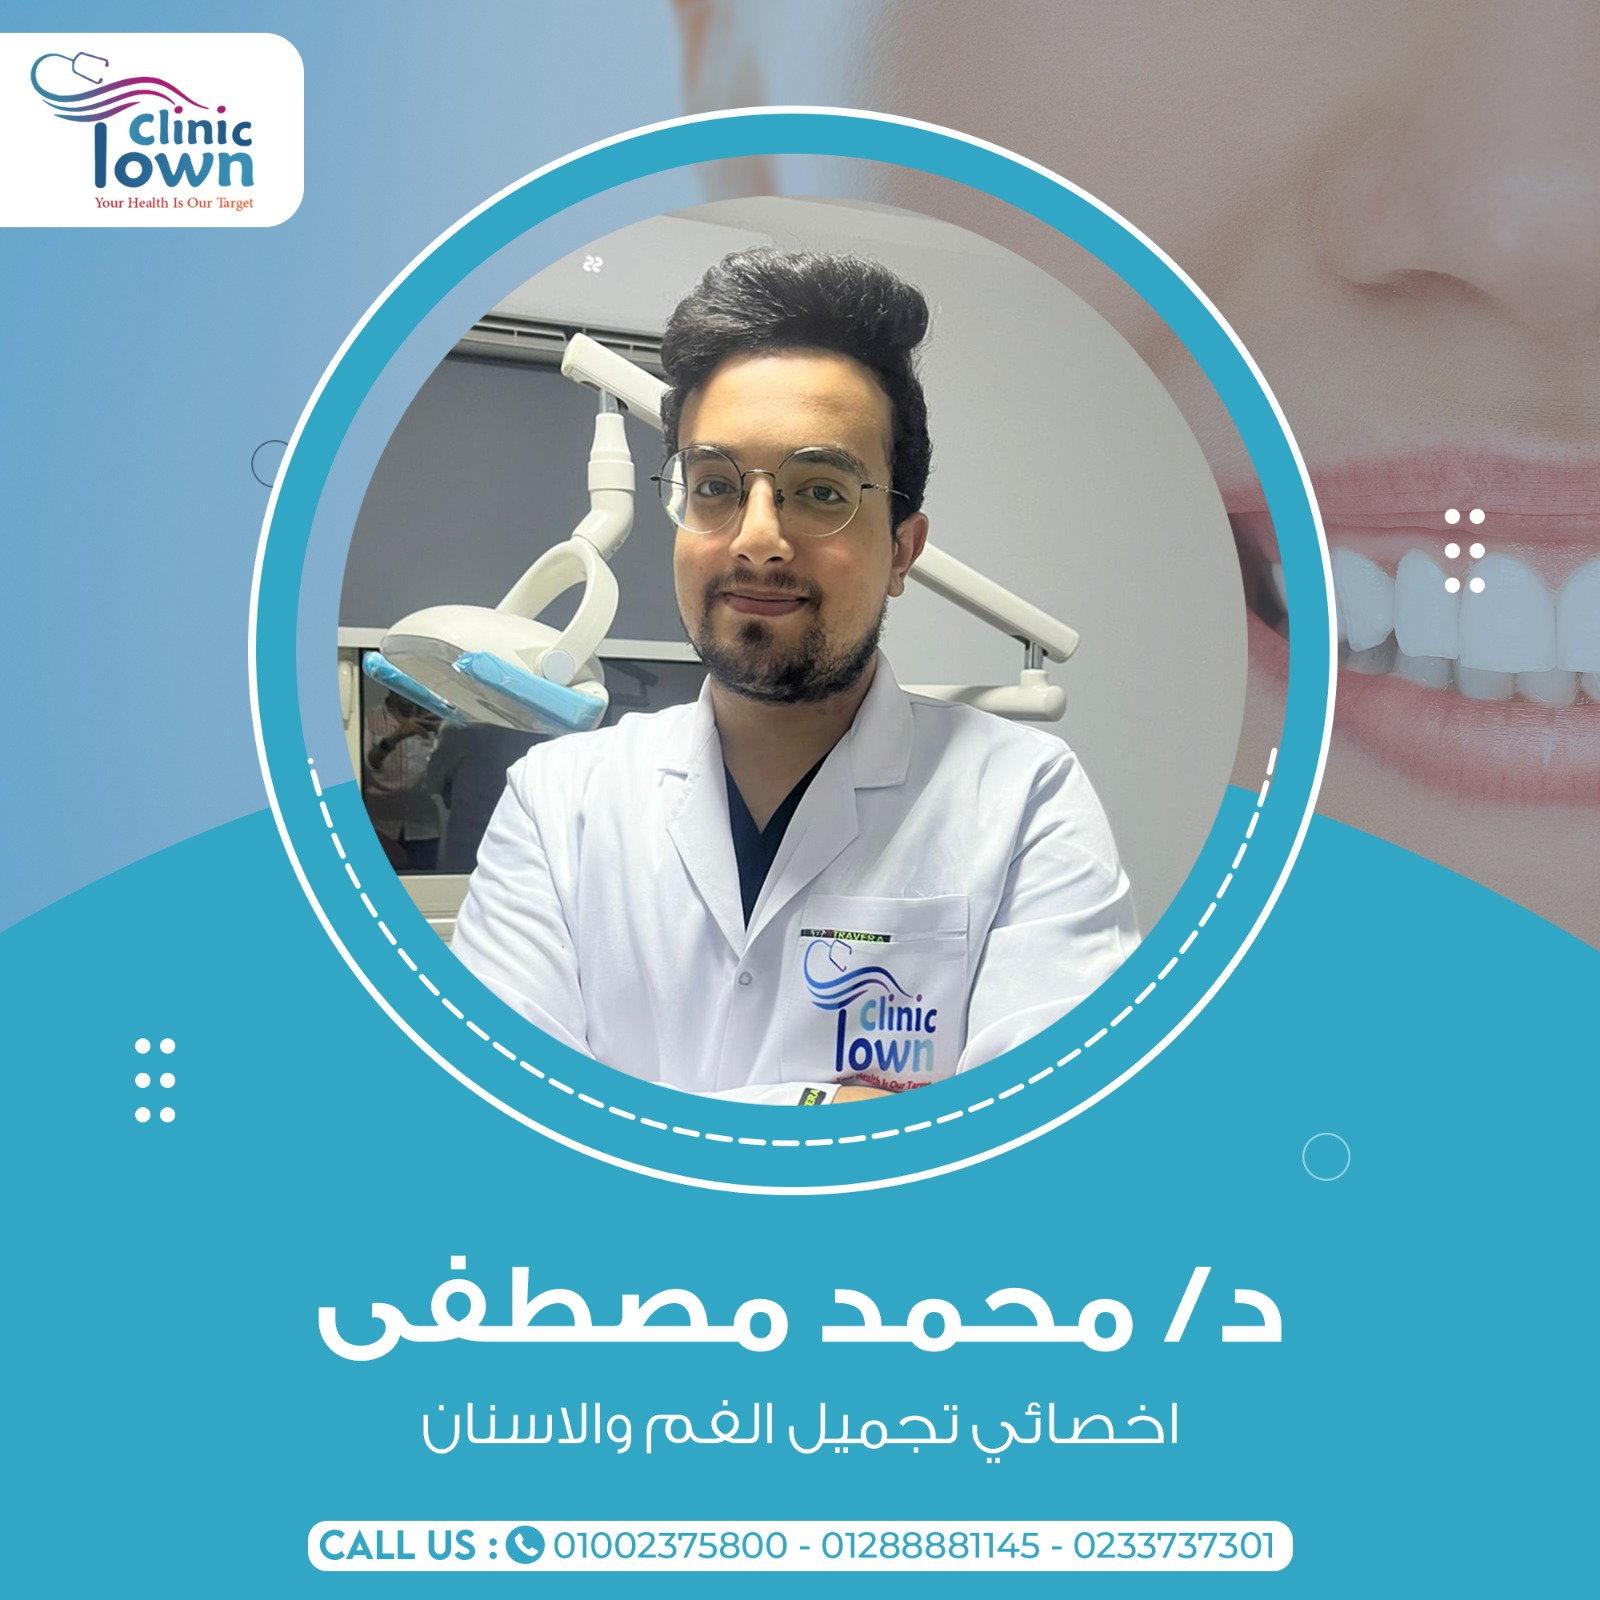 Dr. Mohamed Mostafa